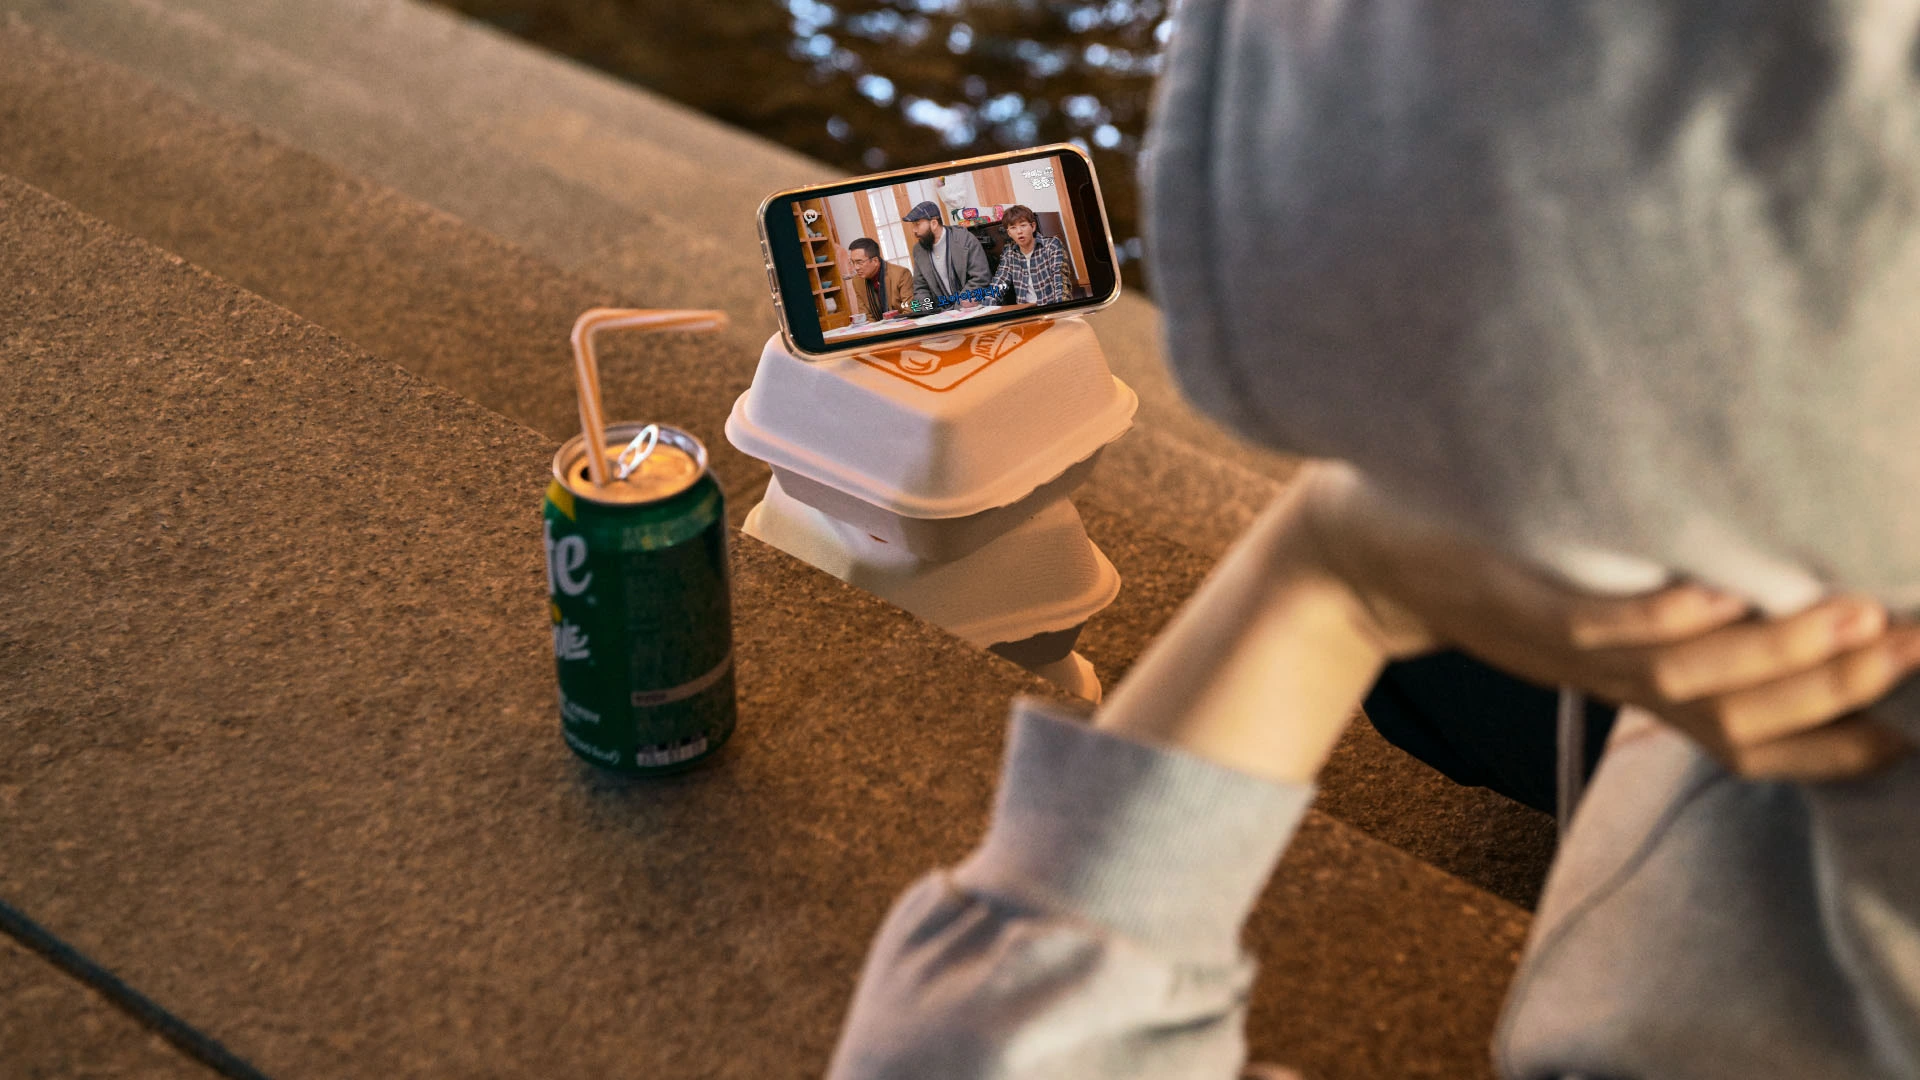 야외에서 간식과 함께 핸드폰으로 카카오TV 통해 영상을 보고 있는 사람의 사진